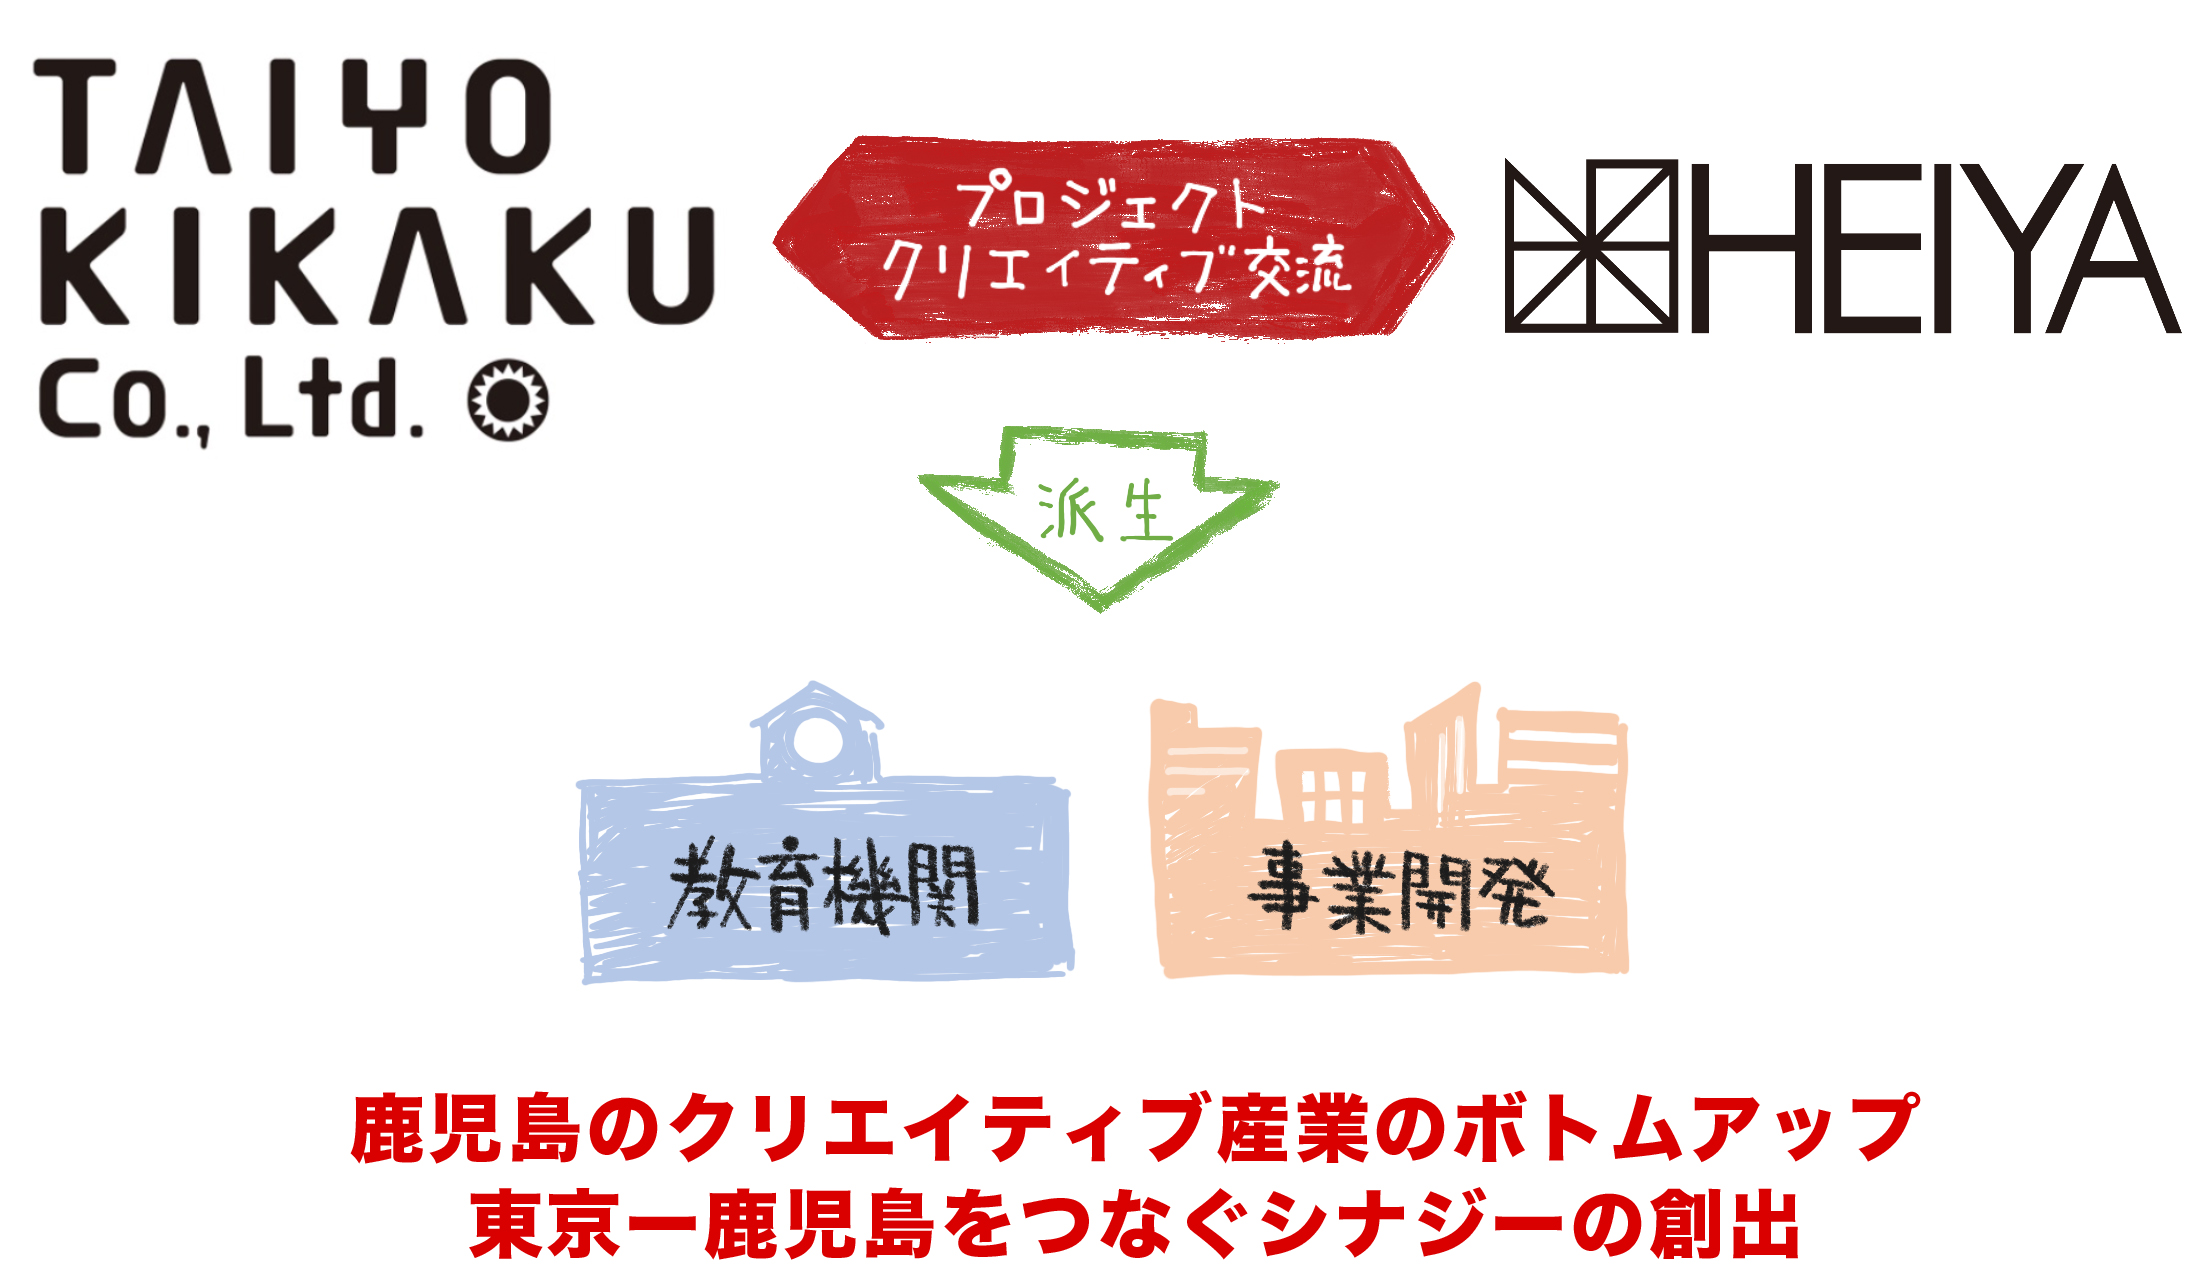 日本パブリックリレーションズ研究所】セミナー「 鹿児島から日本の教育を考える」を開催します | プレスリリースかごしま